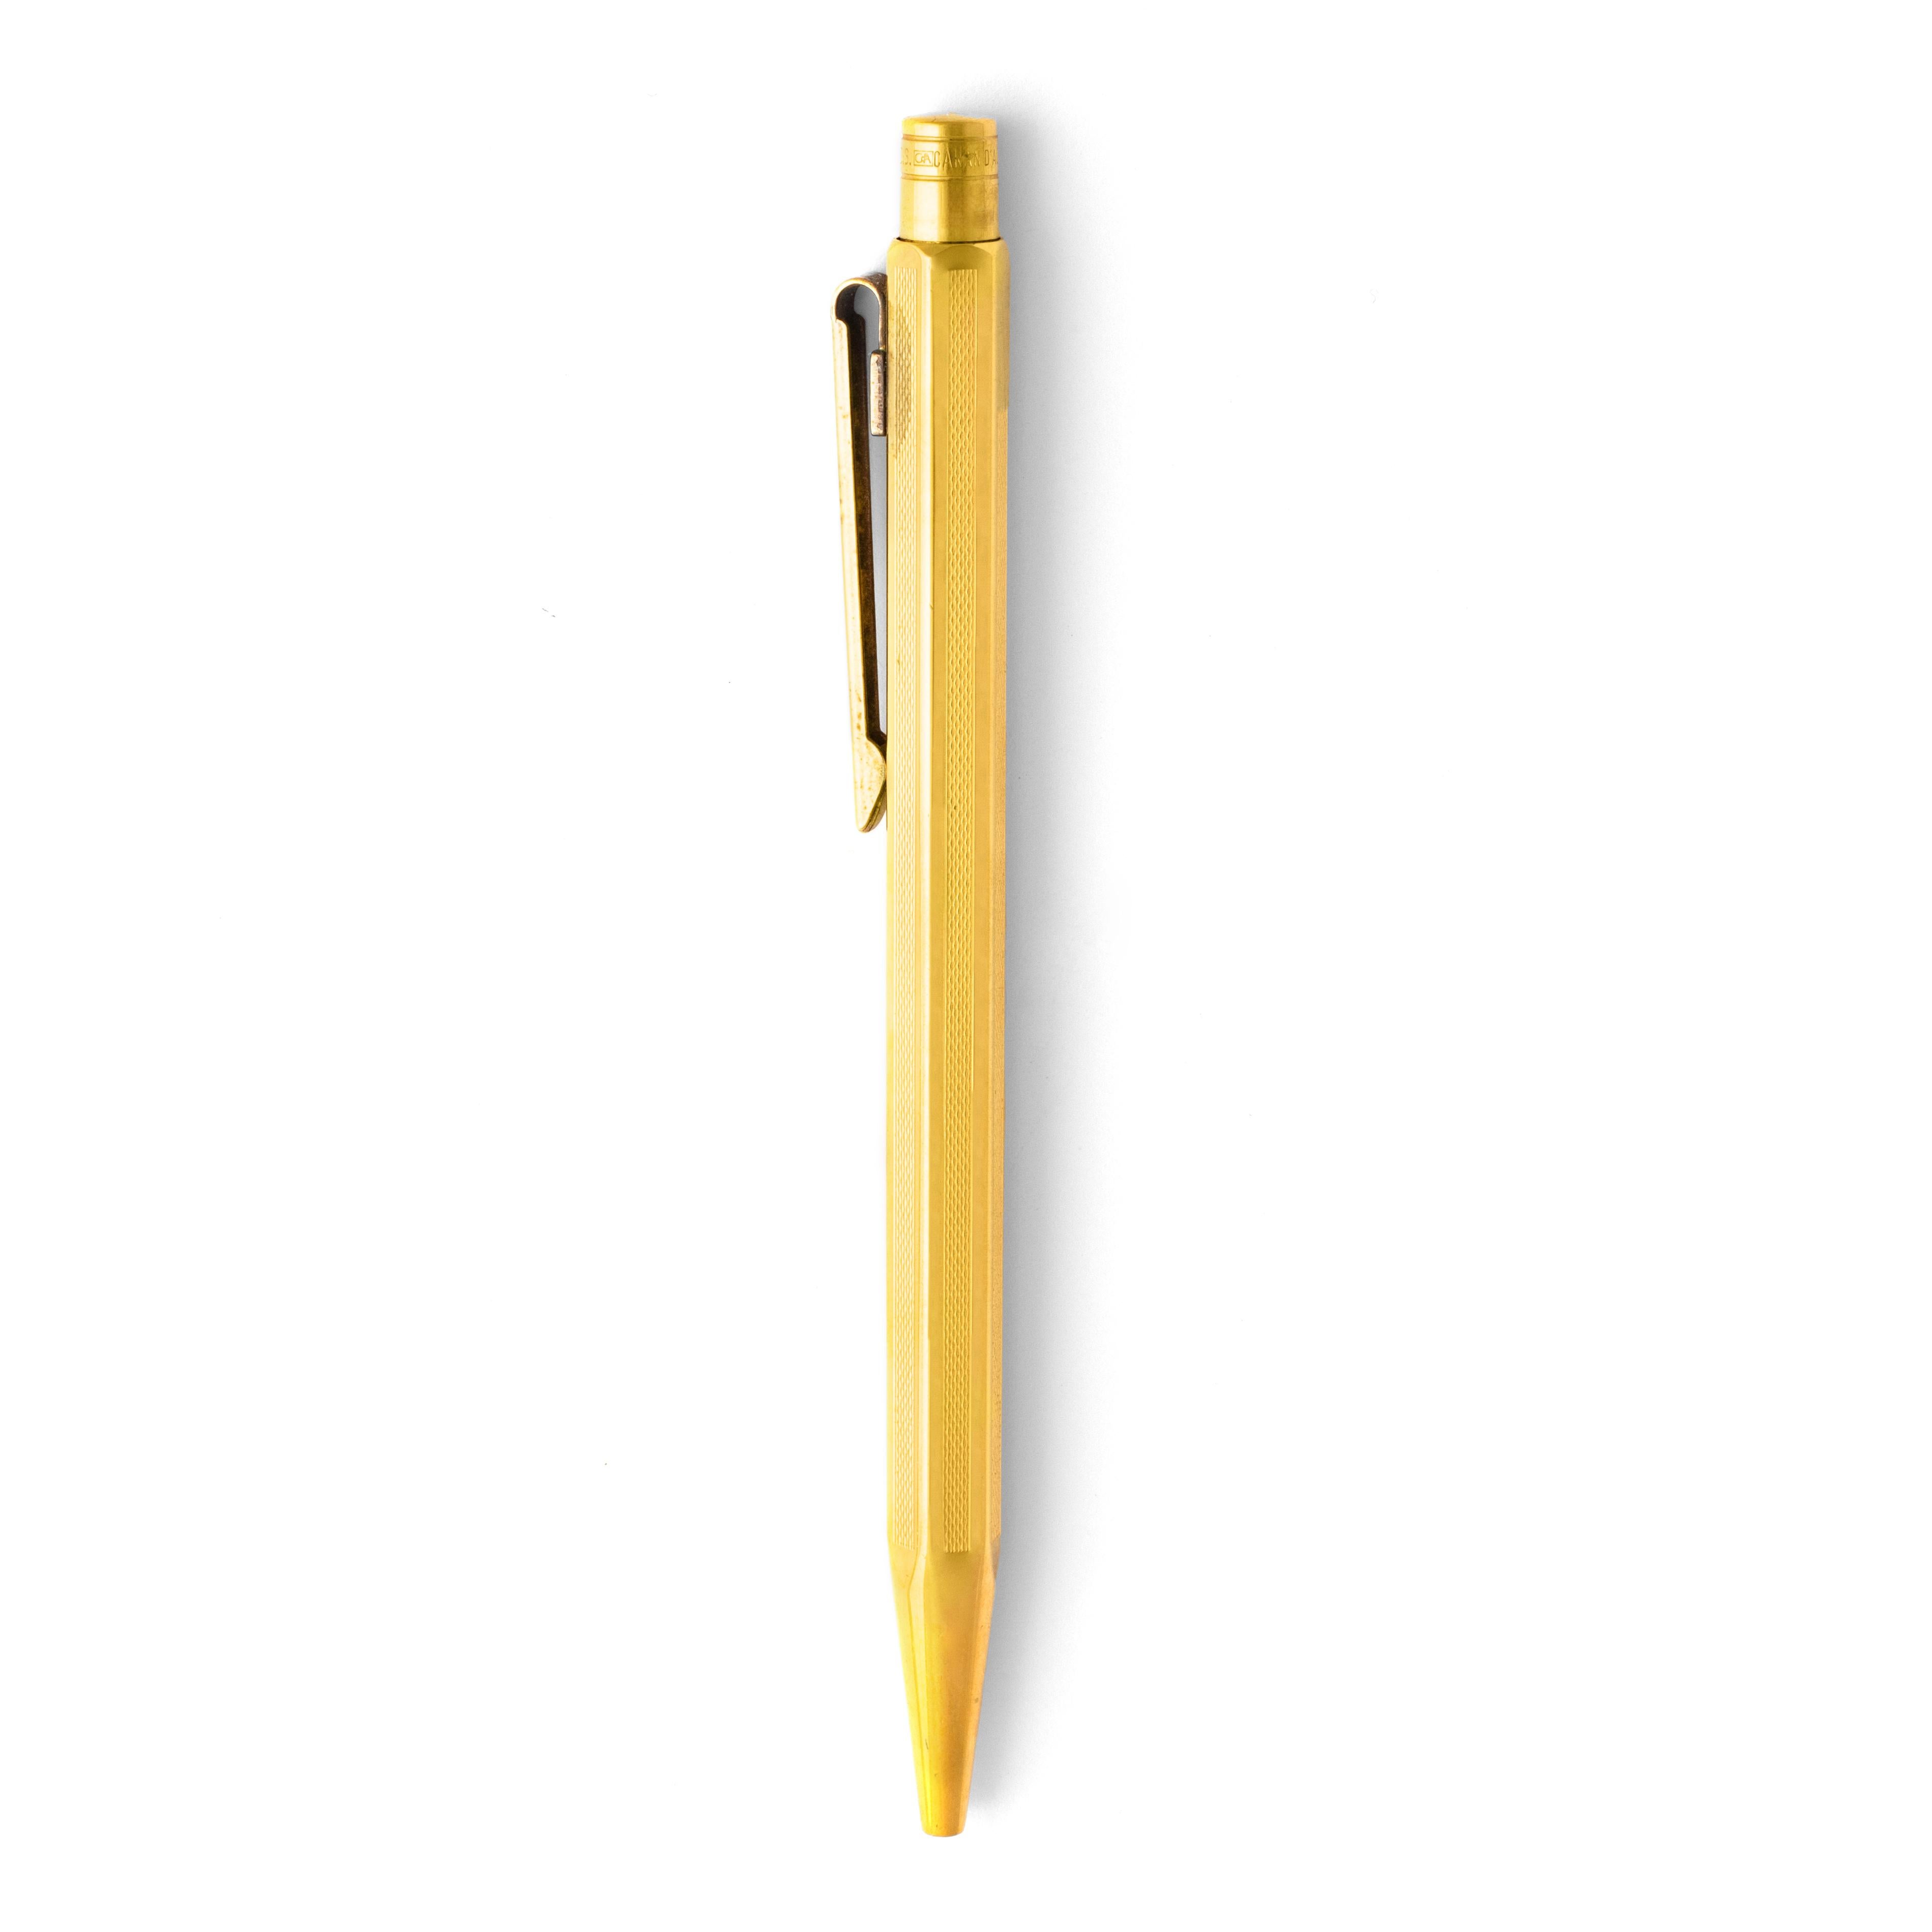 Caran d'Ache Vergoldeter Kugelschreiber.
Abmessungen: 13,00 x 0,80 Zentimeter.

Verkauft wie besehen. Wir übernehmen keine Garantie für das einwandfreie Funktionieren dieses Stifts.